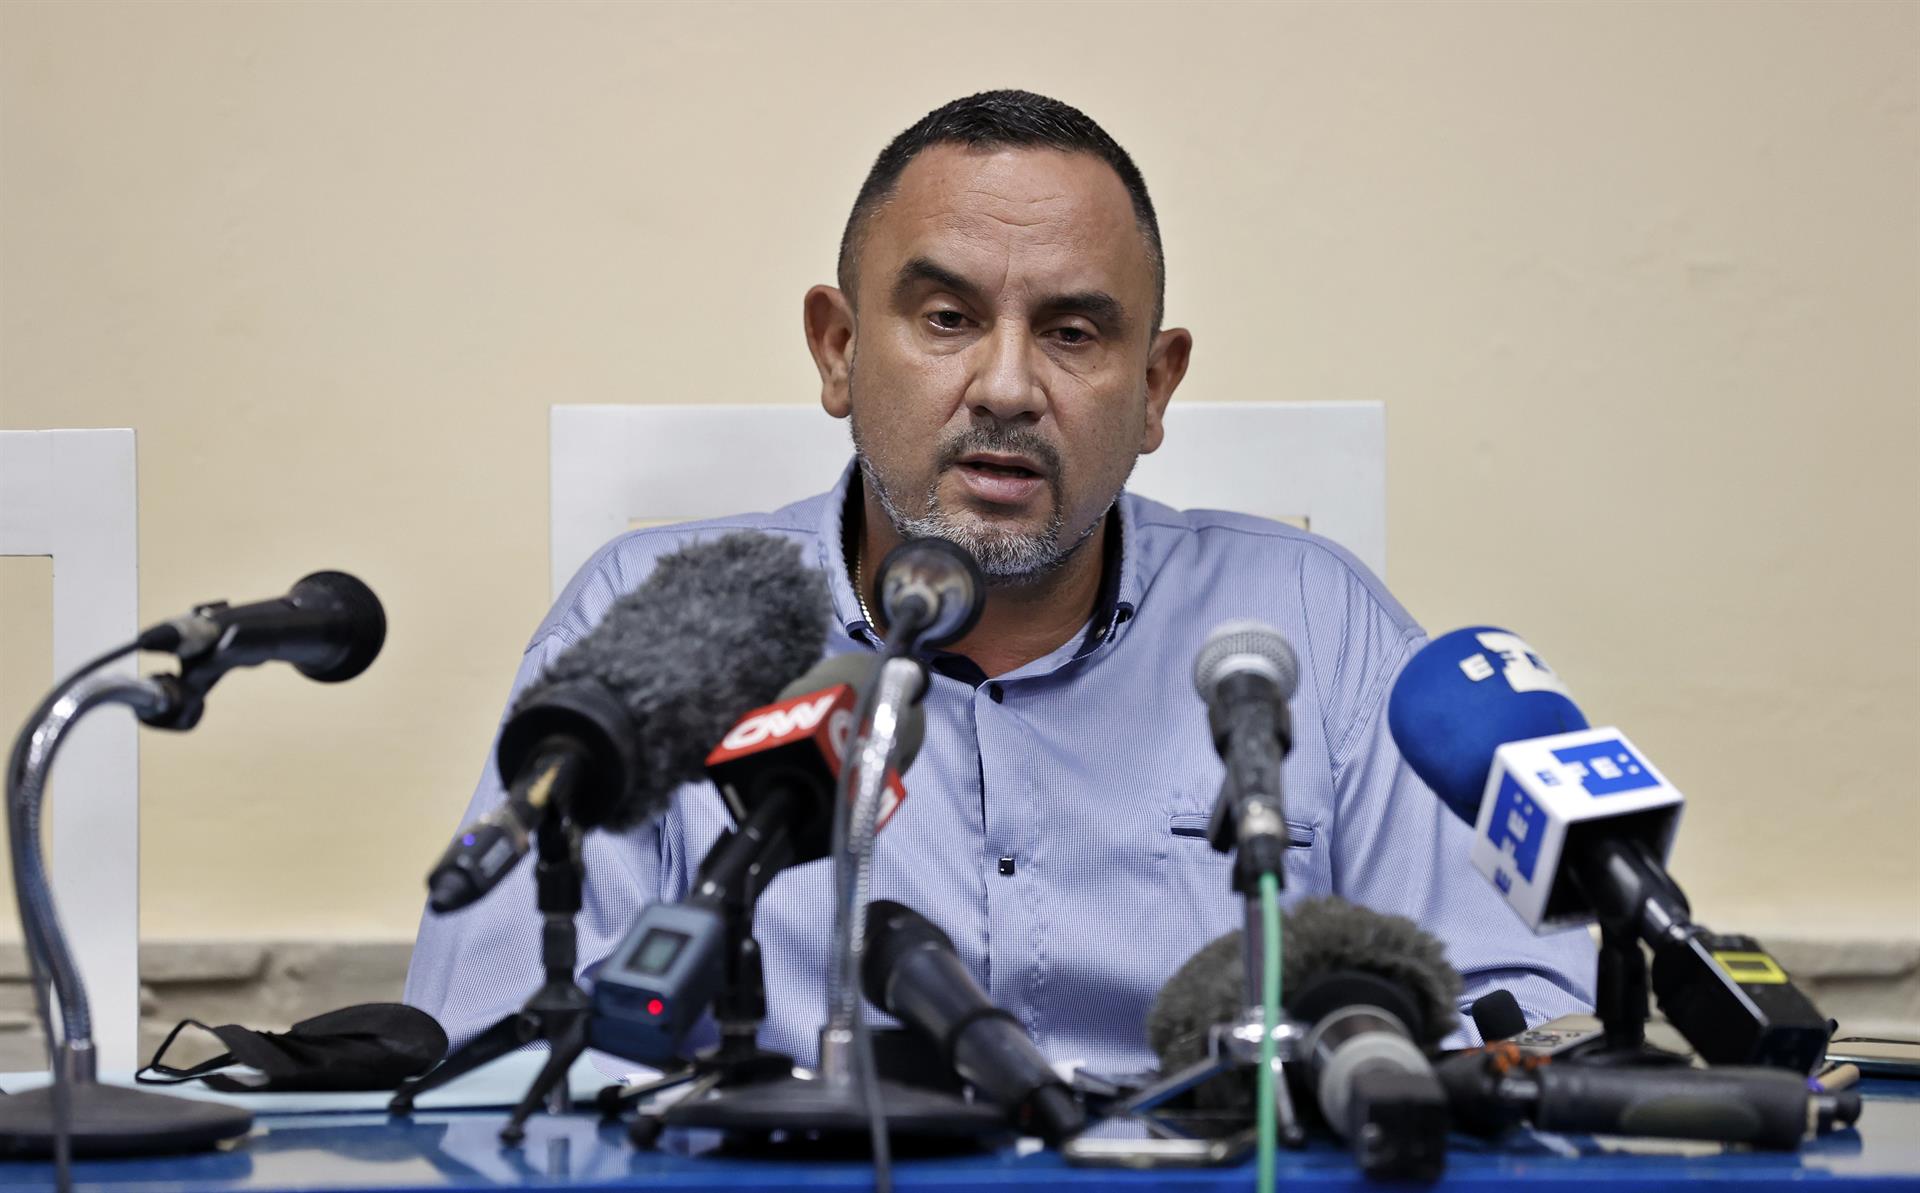 El comisionado nacional de béisbol en Cuba, Juan Reynaldo Pérez Pardo, habla en rueda de prensa, el 12 de abril de 2022, en La Habana (Cuba). EFE/Ernesto Mastrascusa
